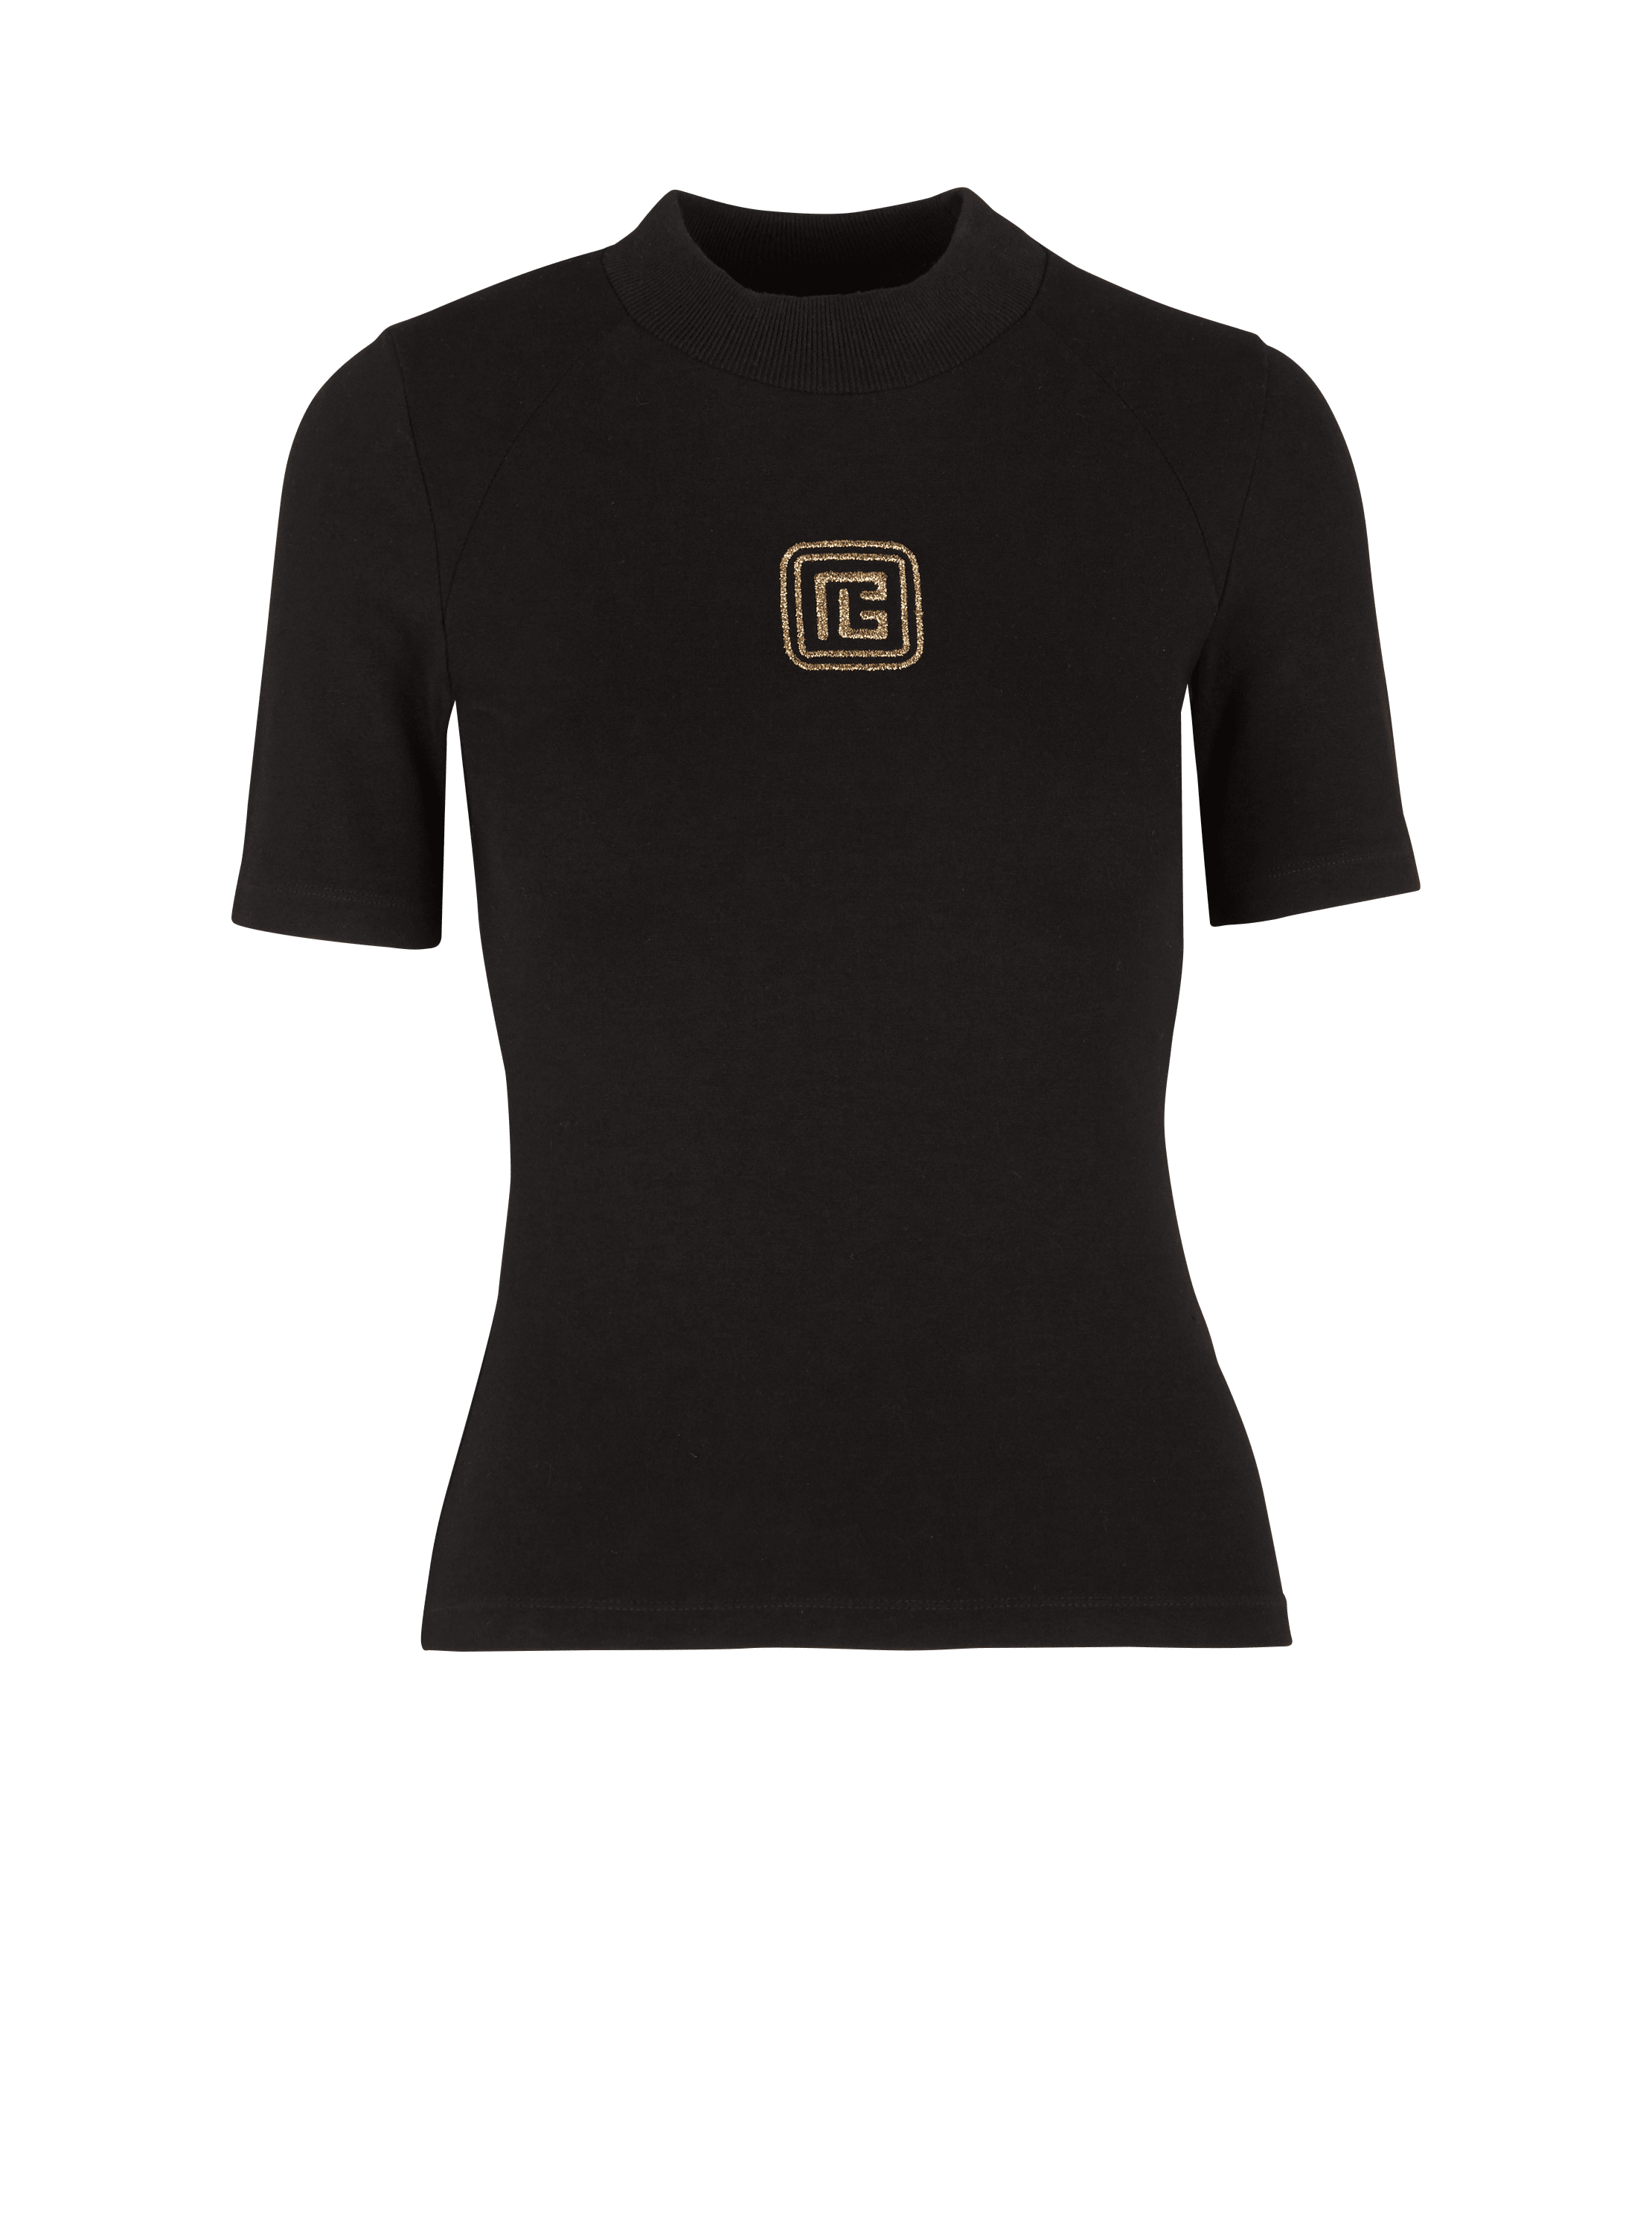 T-shirt PB Retro, noir, hi-res